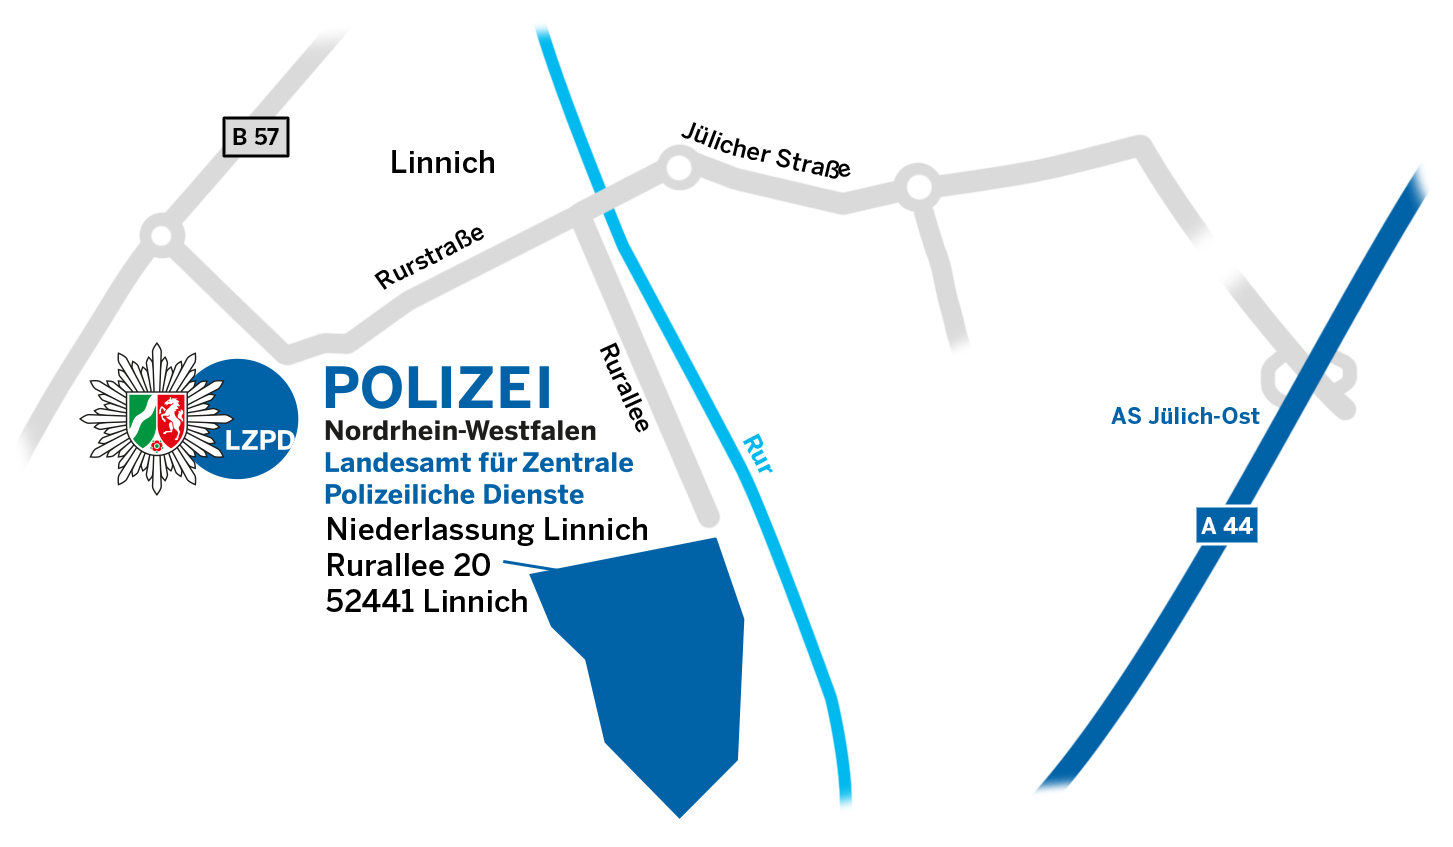 LZPD NRW Anfahrt Niederlassung Linnich